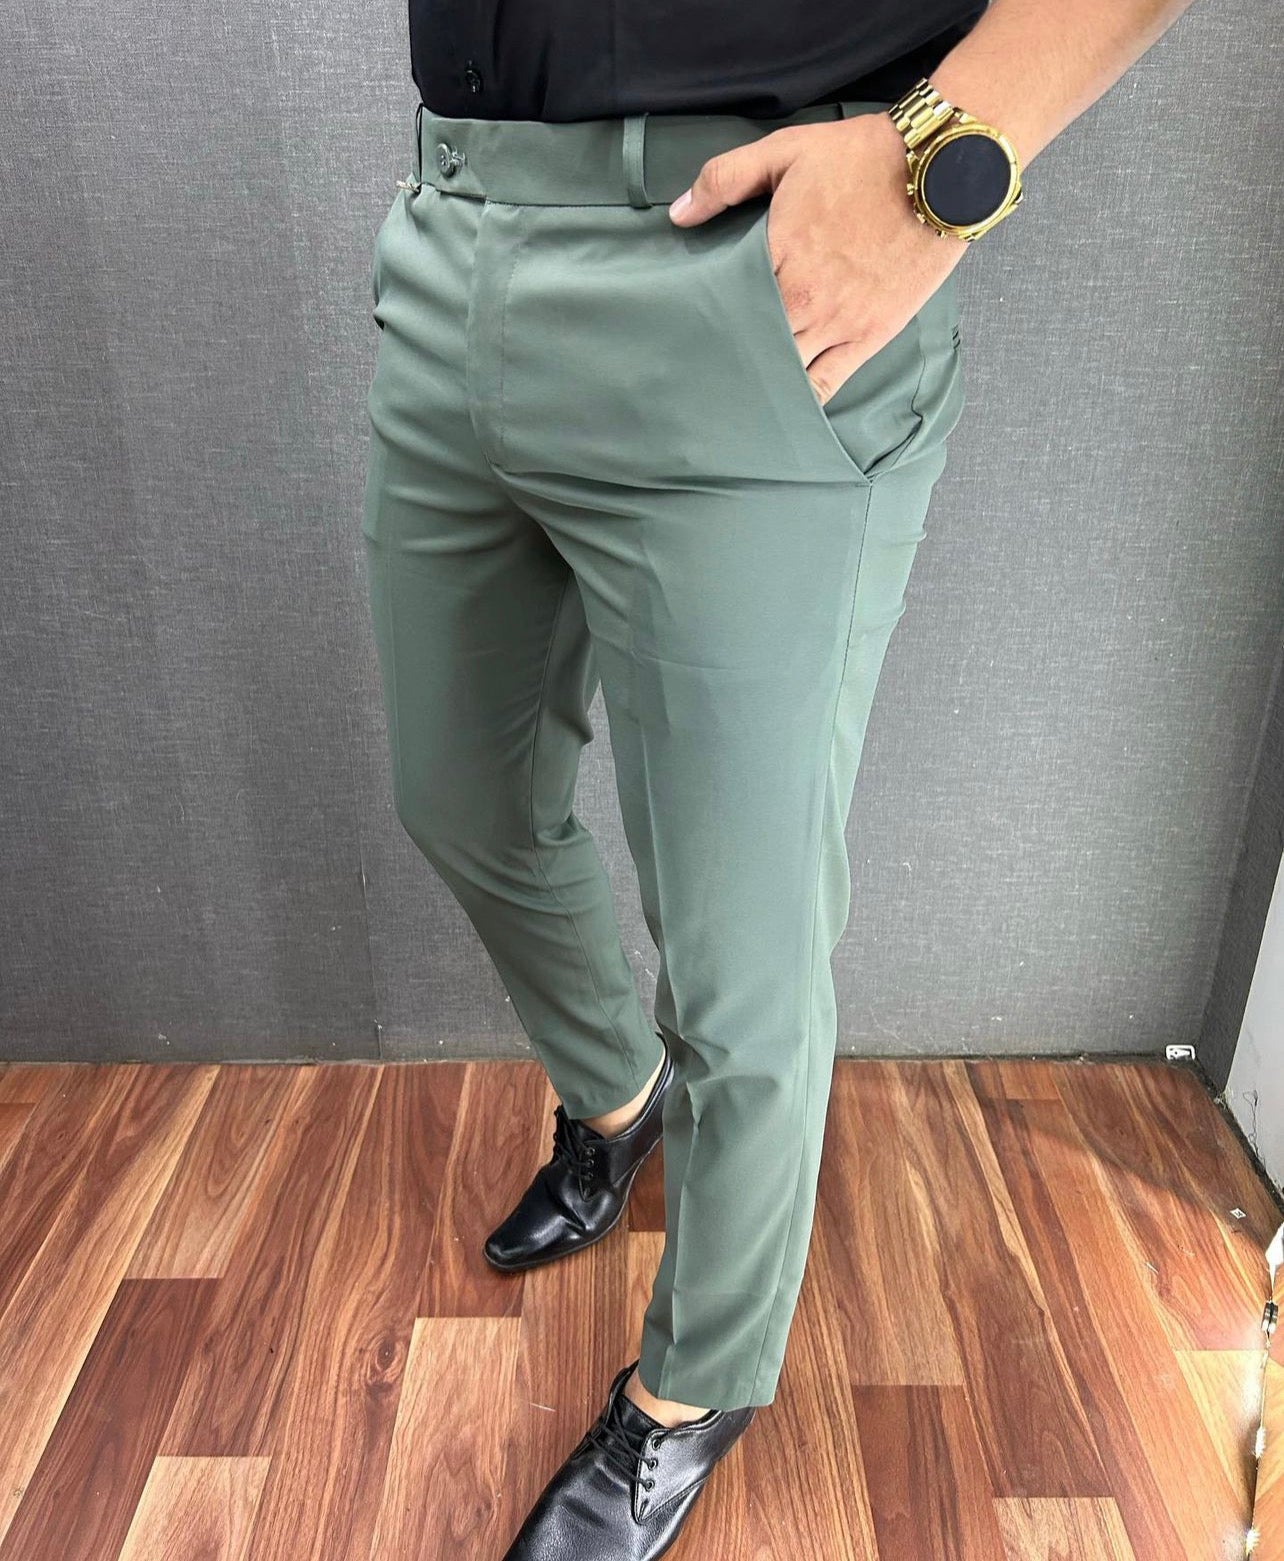 Buy Olive Green Linen Wide-Leg Formal Trousers Online | FableStreet